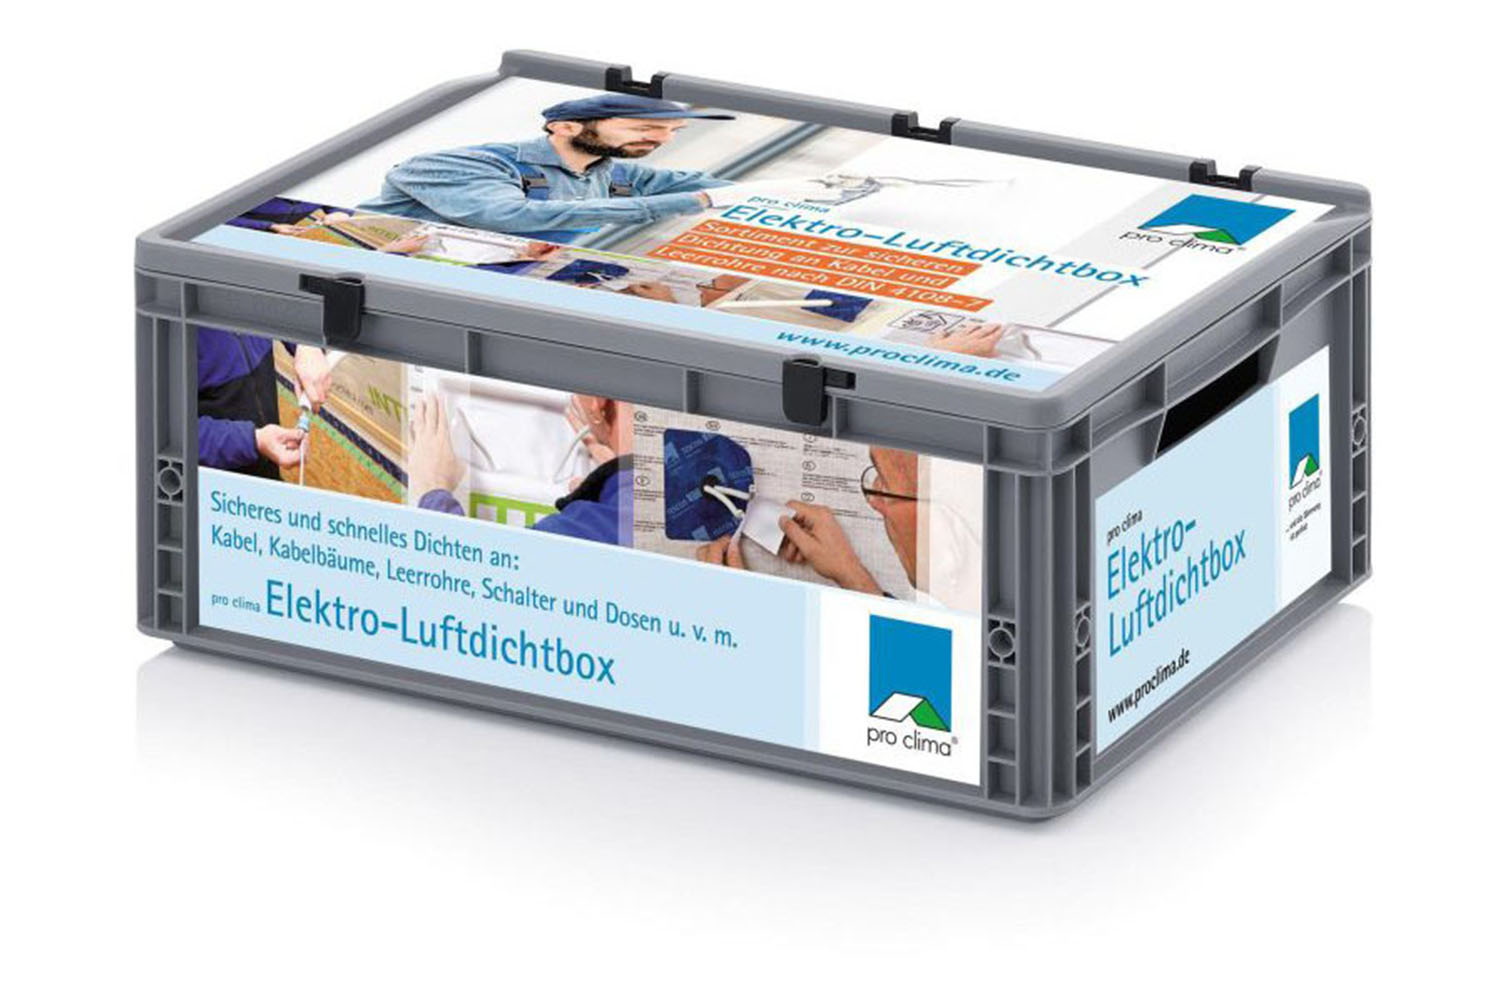 Pro Clima ELEKTRO-LUFTDICHTBOX Sortiment zur sicheren Dichtung an Kabel und Leerrohre nach DIN 4108-7